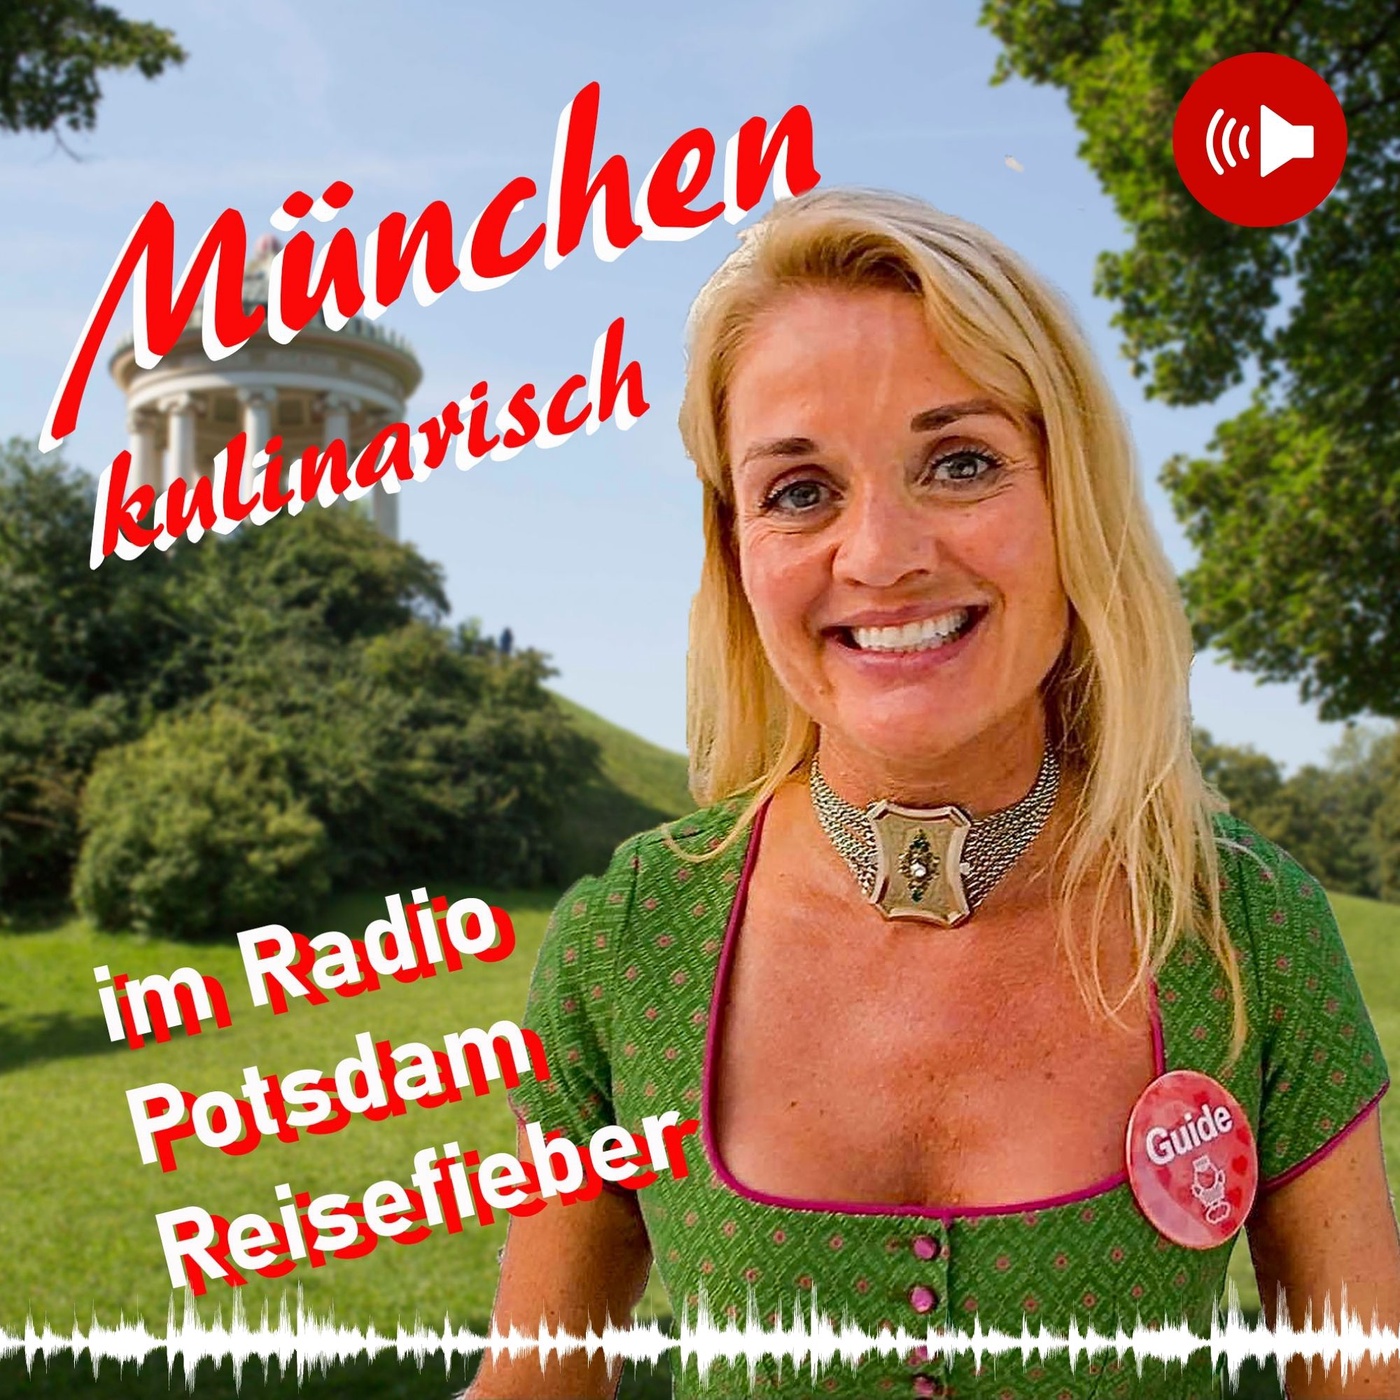 #25 Podcast München kulinarisch - im Radio Potsdam Reisefieber